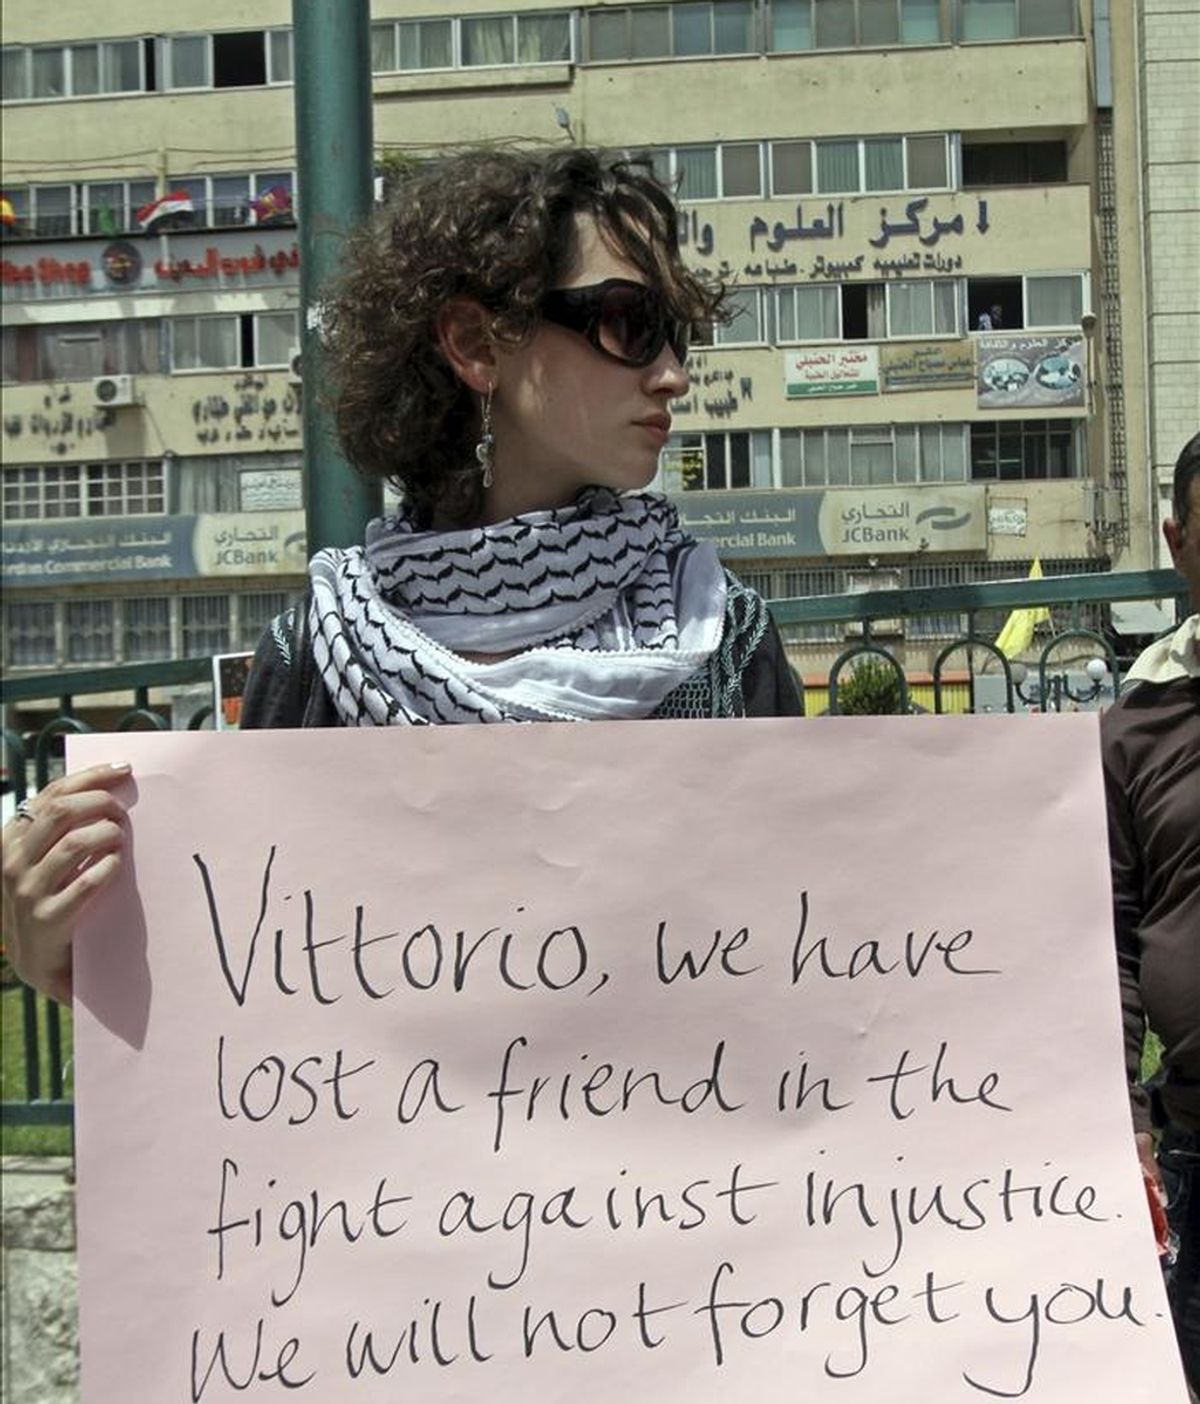 Una activista muestra una pancarta mientras participa en una protesta de repulsa al asesinato del joven activista italiano Vittorio Arrigoni, quien apareció muerto la madrugada del 14 de abril en Gaza tras ser secuestrado por un grupo extremista salafista, hoy sábado 16 de abril de 2011 en Naplusa, Cisjordania. EFE